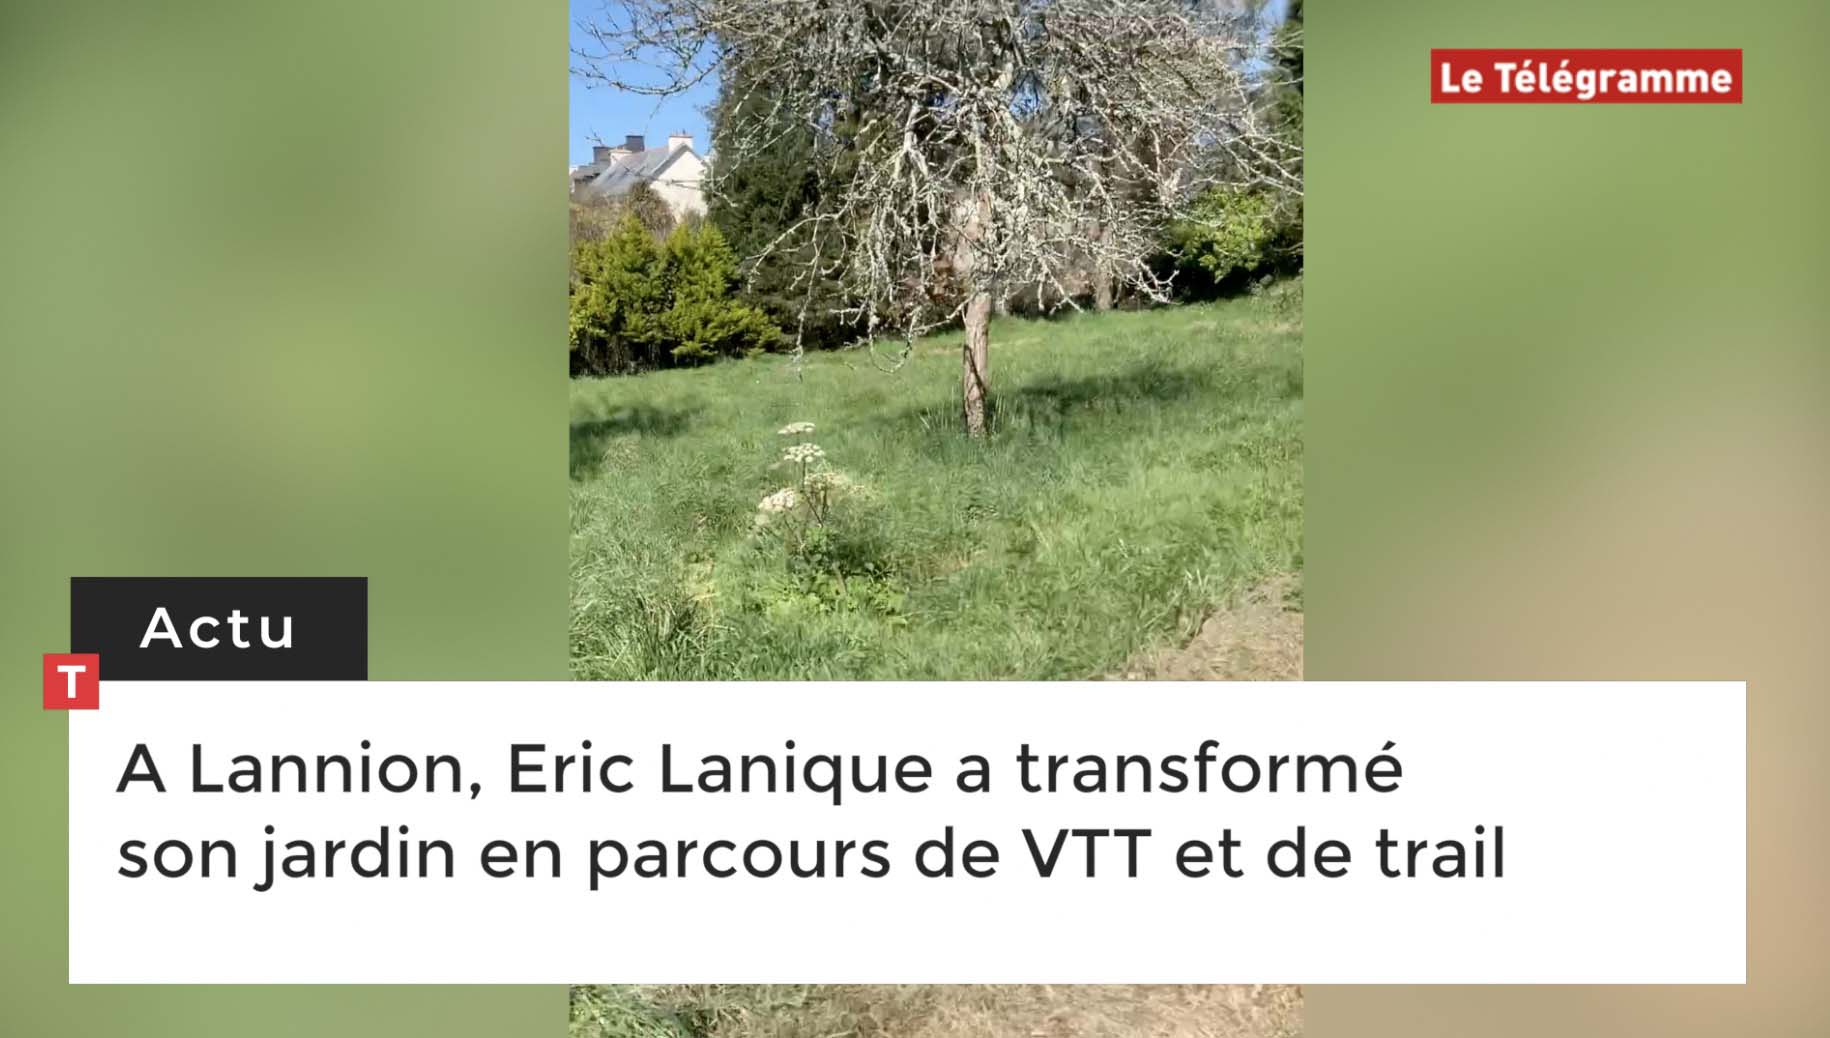 A Lannion, Eric Lanique a transformé son jardin en parcours de VTT et de trail (Le Télégramme)